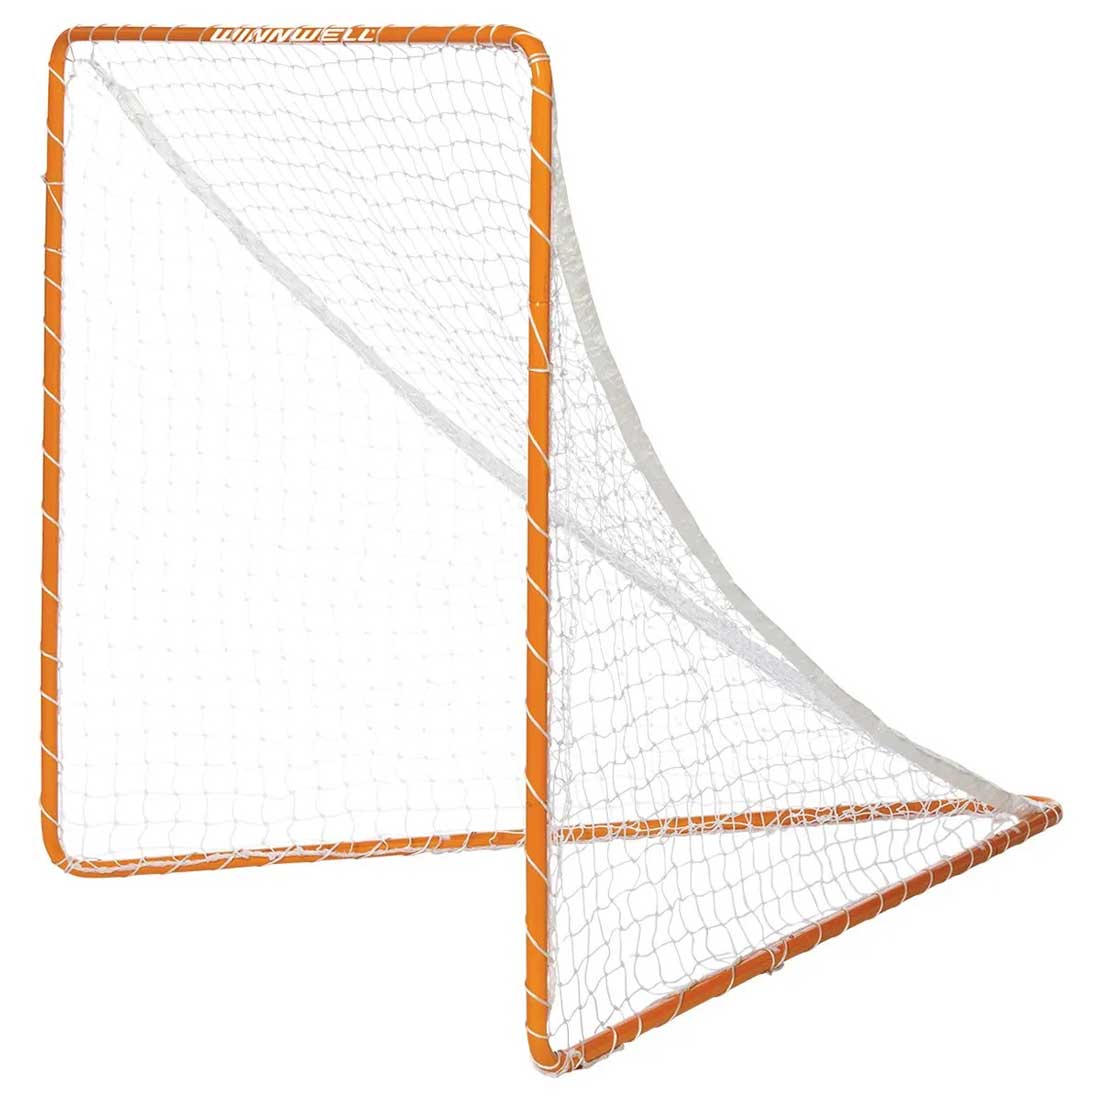 Picture of the Winnwell 4' x 4' Lacrosse Goal Net